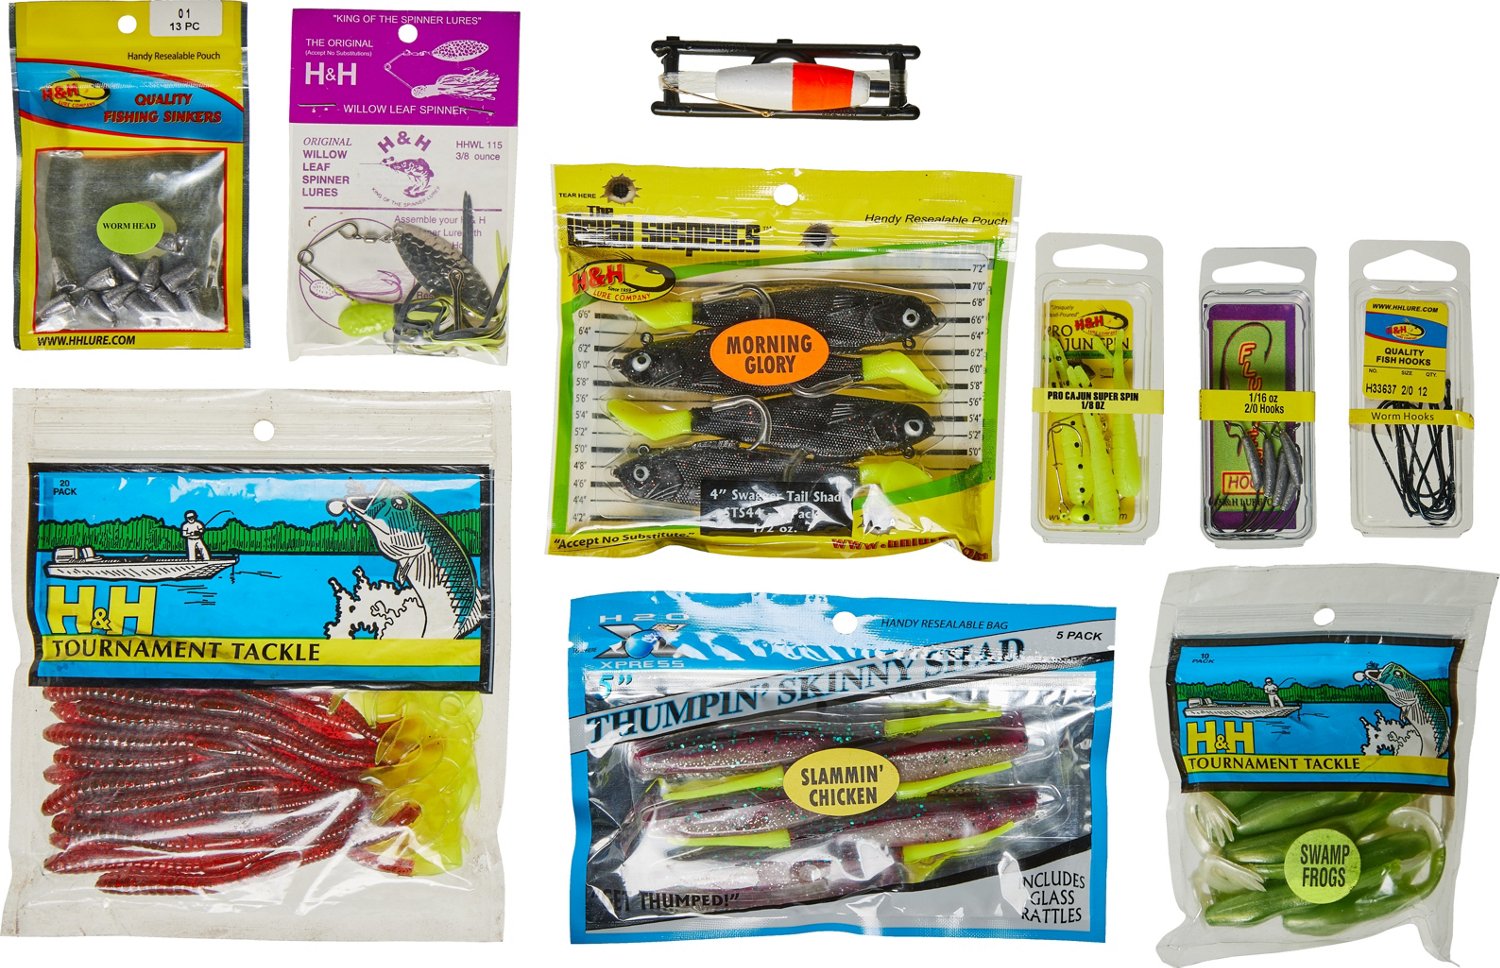 H&H Lure Freshwater Fish Kit